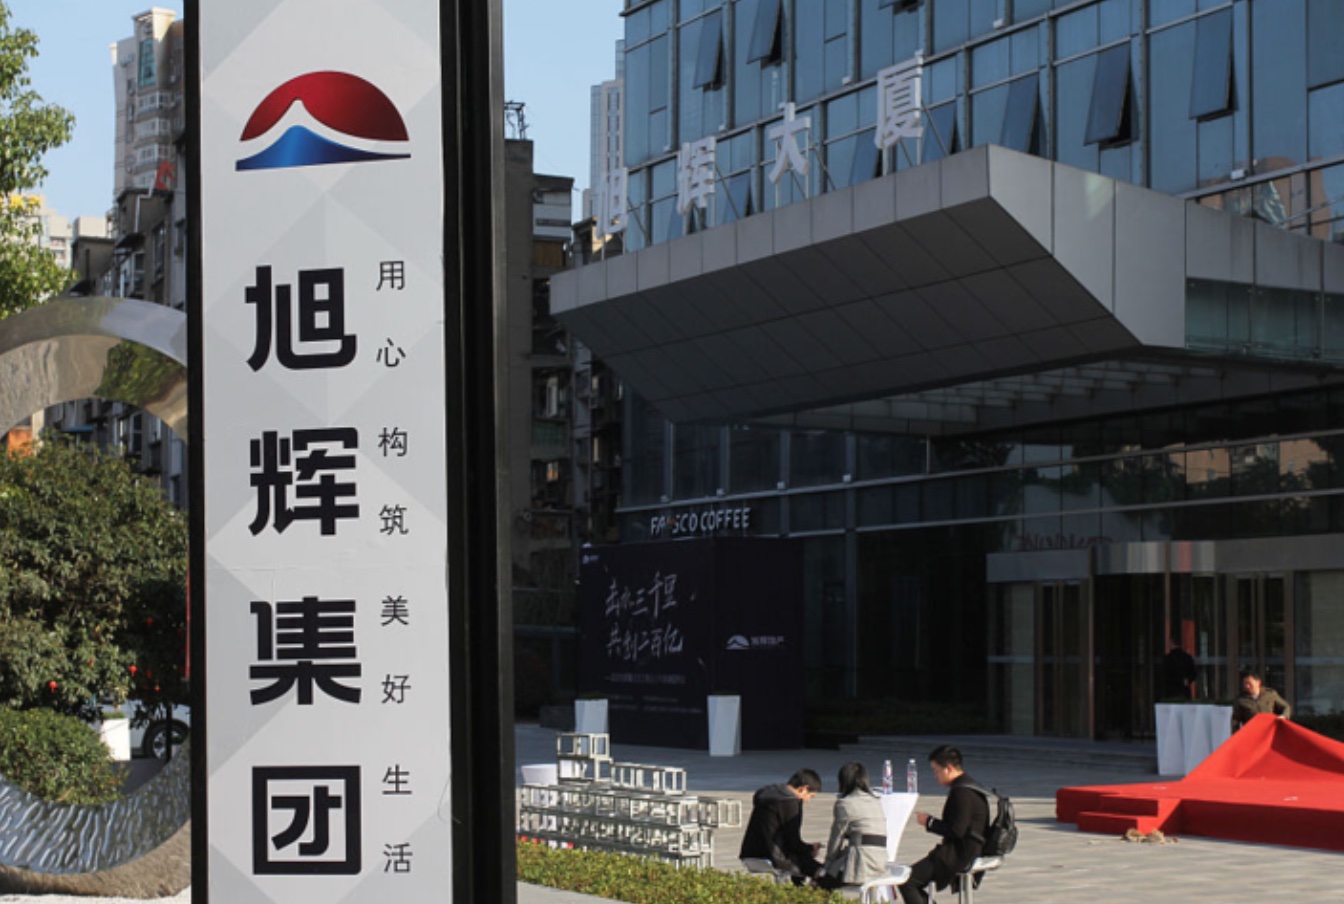 消息称旭辉集团拟8.5亿元出售上海杨浦区商业项目